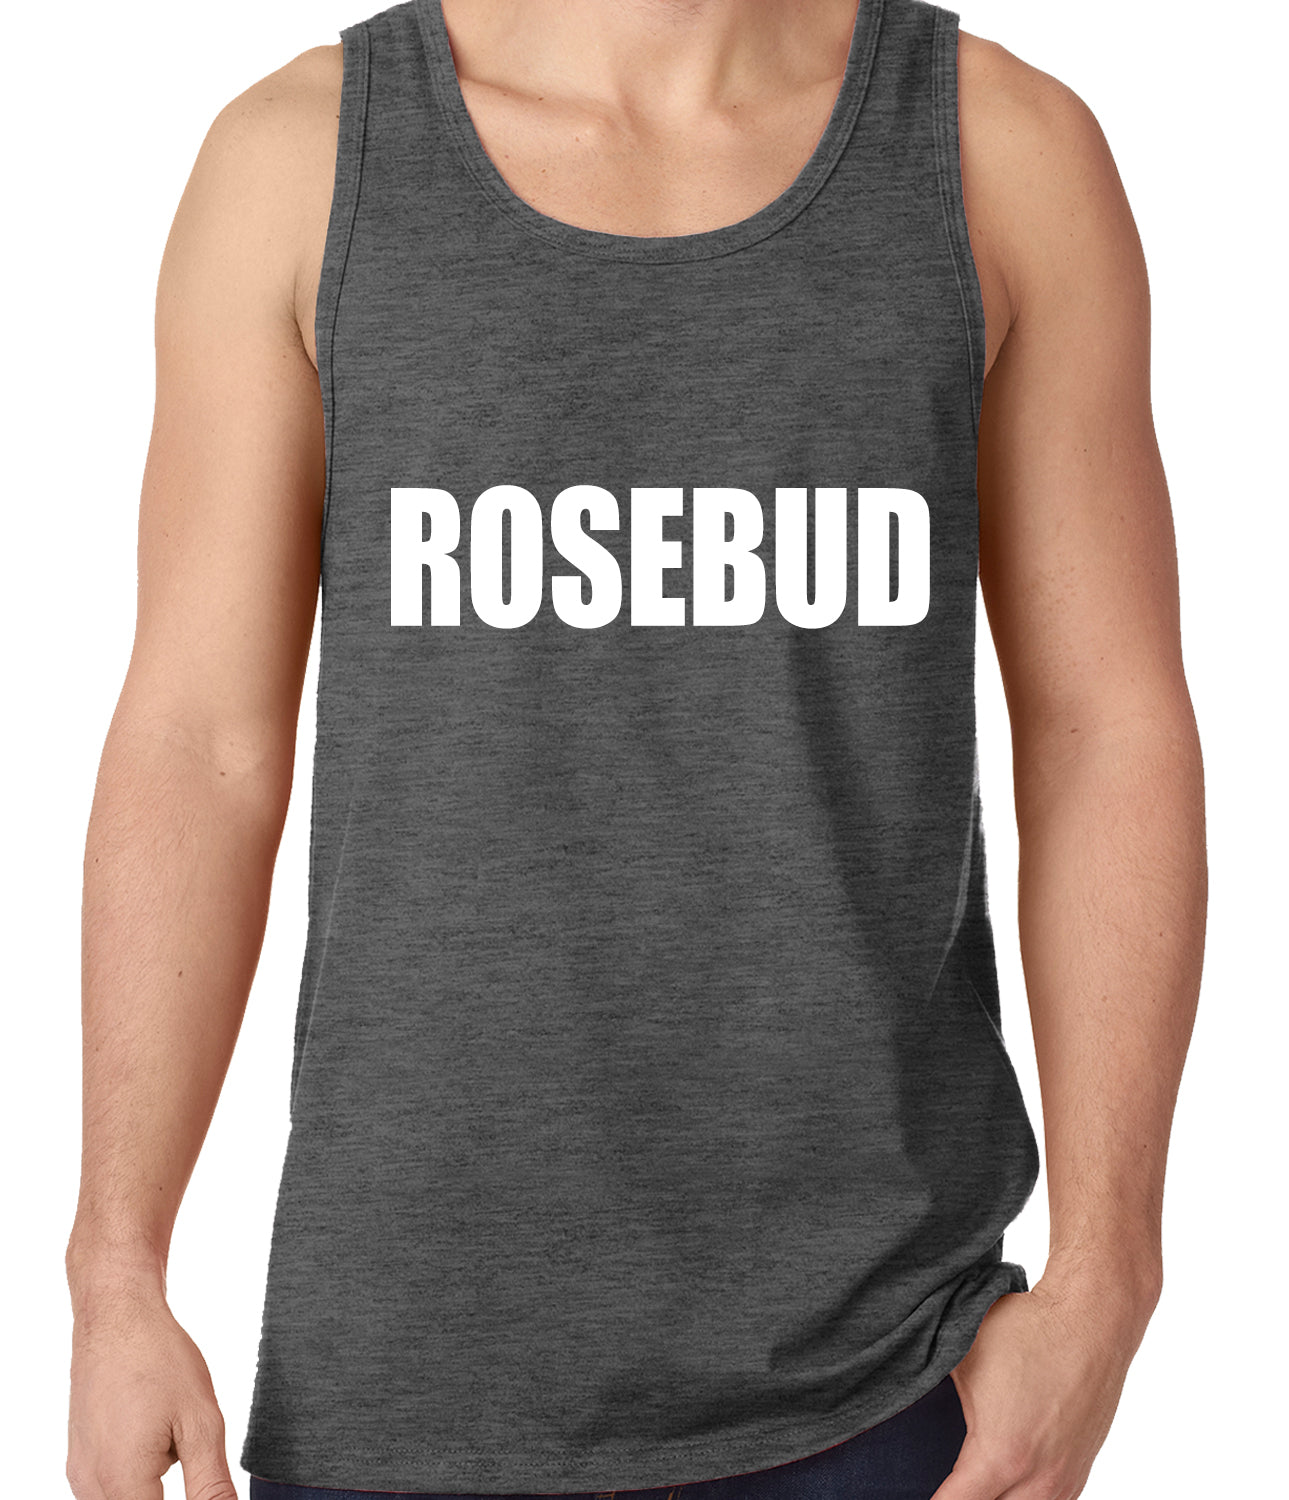 Rosebud Tank Top